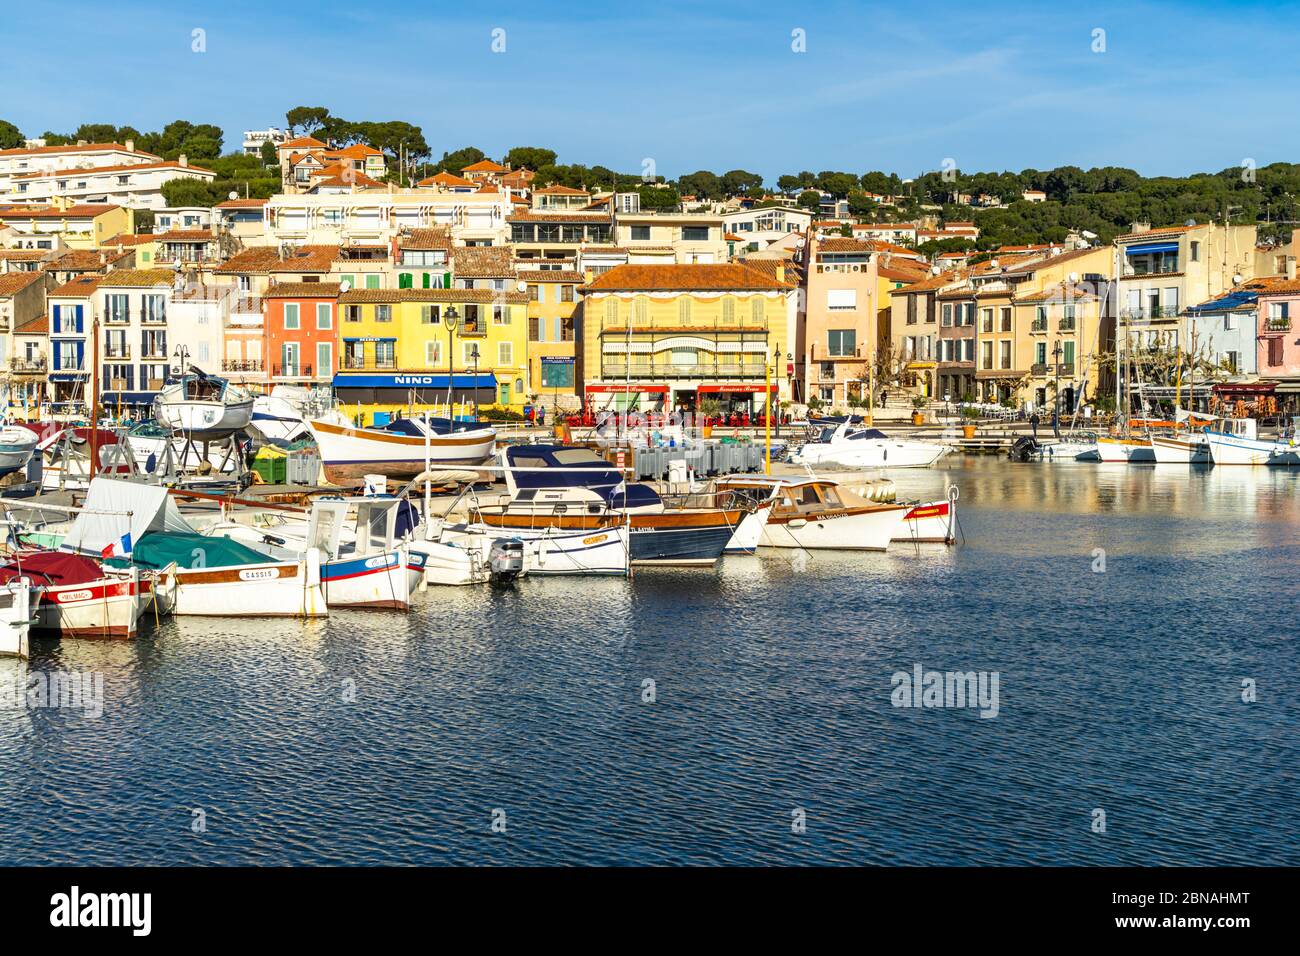 Le port coloré de Cassis, une petite station balnéaire du sud de la France près de Marseille. Cassis, France, janvier 2020 Banque D'Images